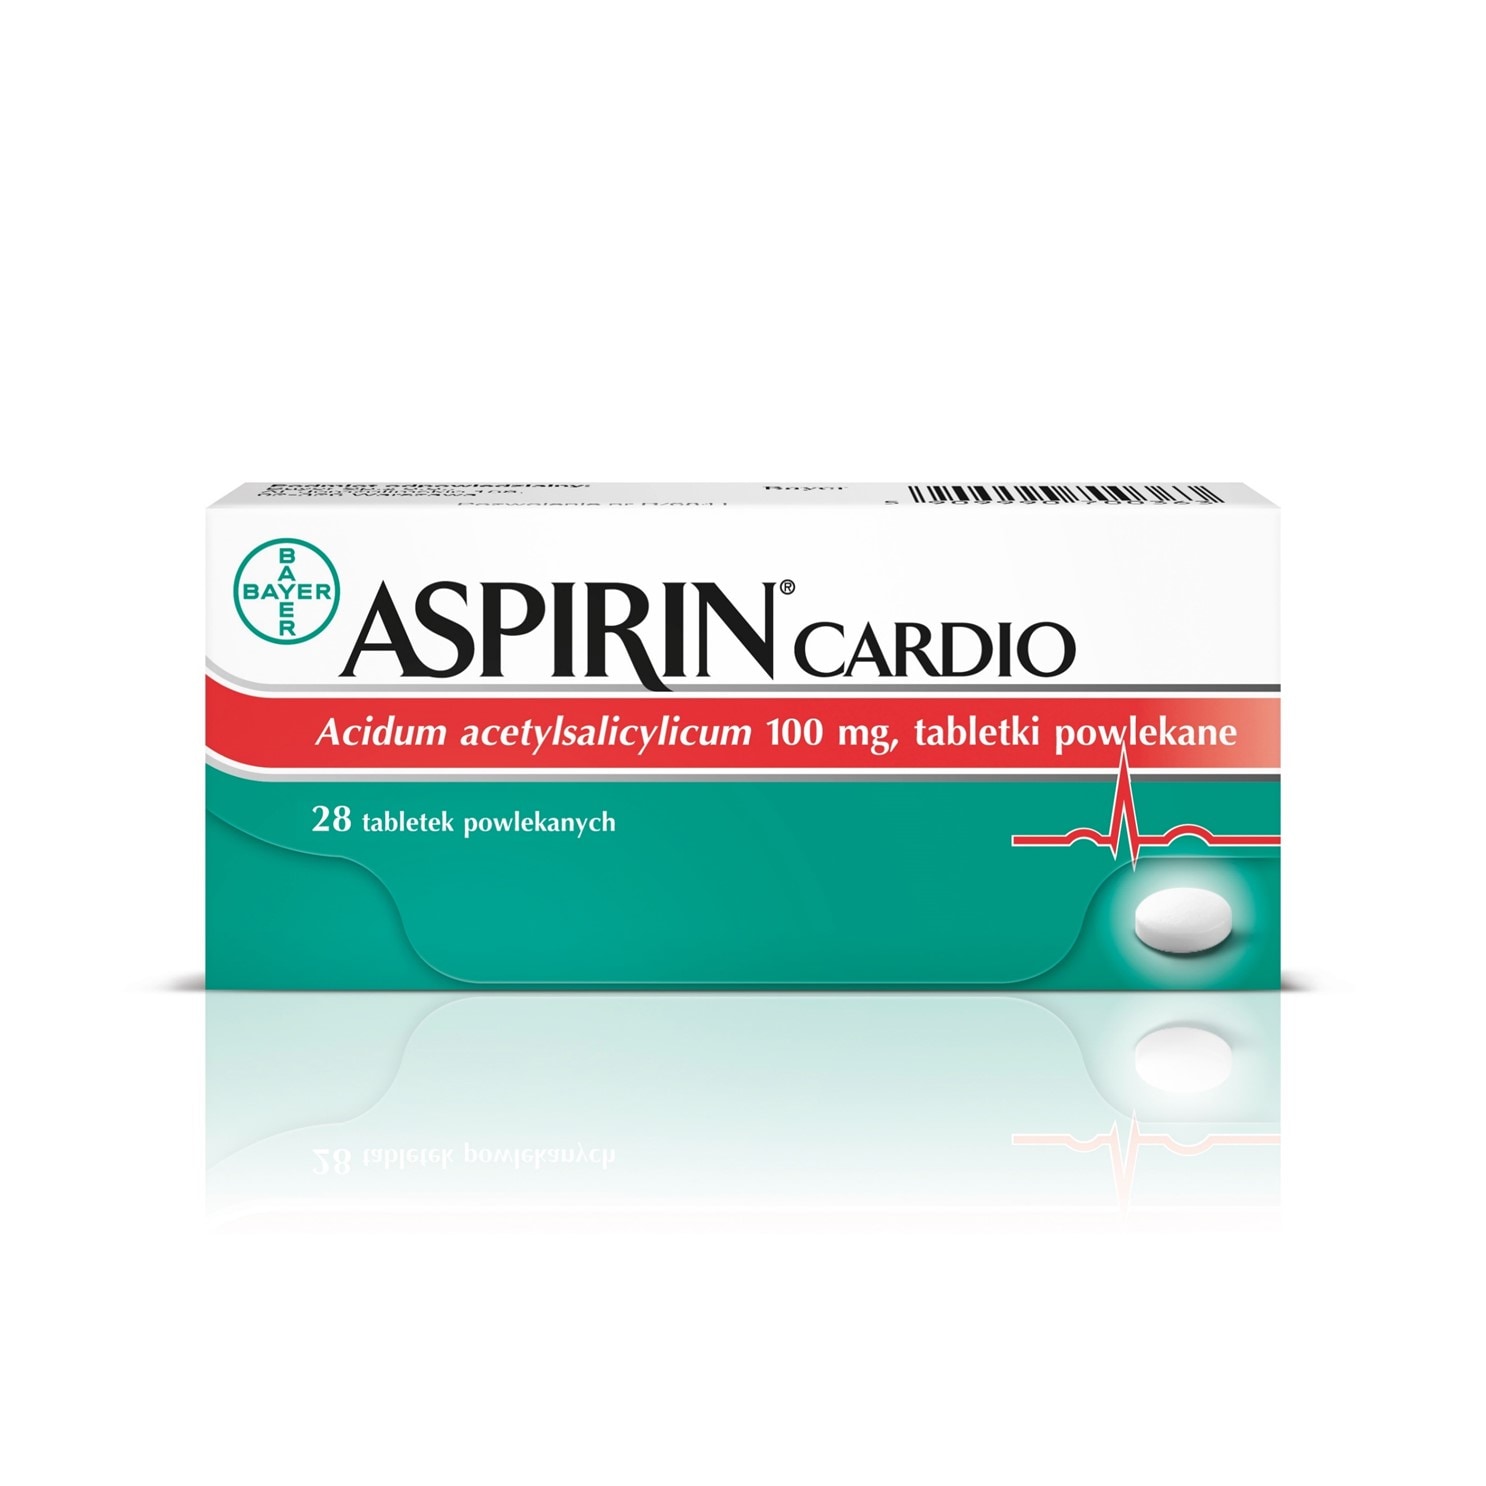 Aspirin® Cardio dla ochrony serca